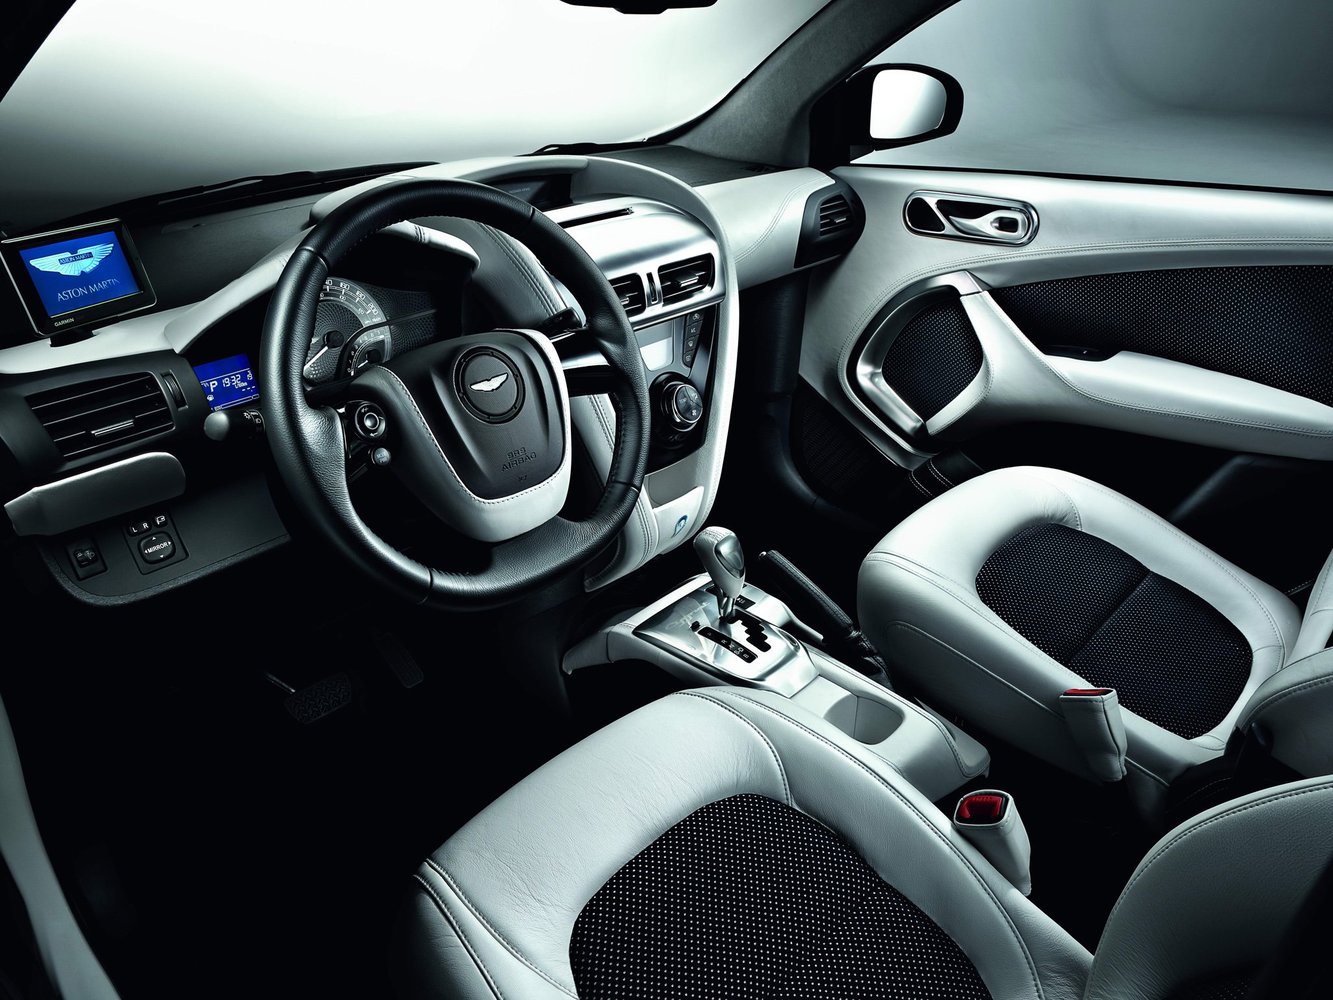 хэтчбек 3 дв. Aston Martin Cygnet 2011 - 2013г выпуска модификация 1.3 CVT (98 л.с.)